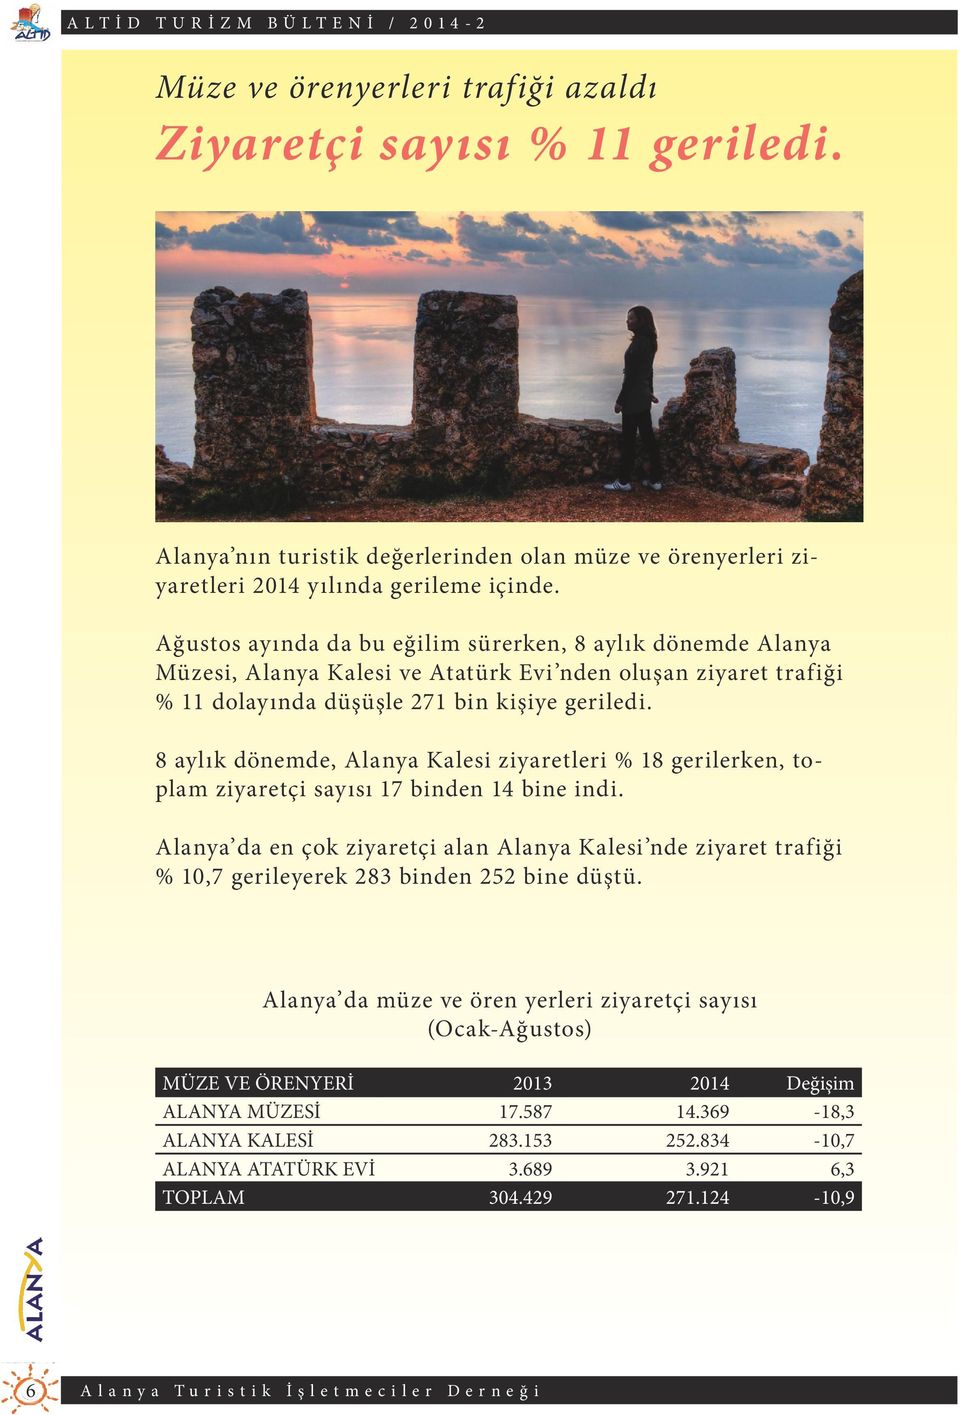 8 aylık dönemde, Alanya Kalesi ziyaretleri % 18 gerilerken, toplam ziyaretçi sayısı 17 binden 14 bine indi.